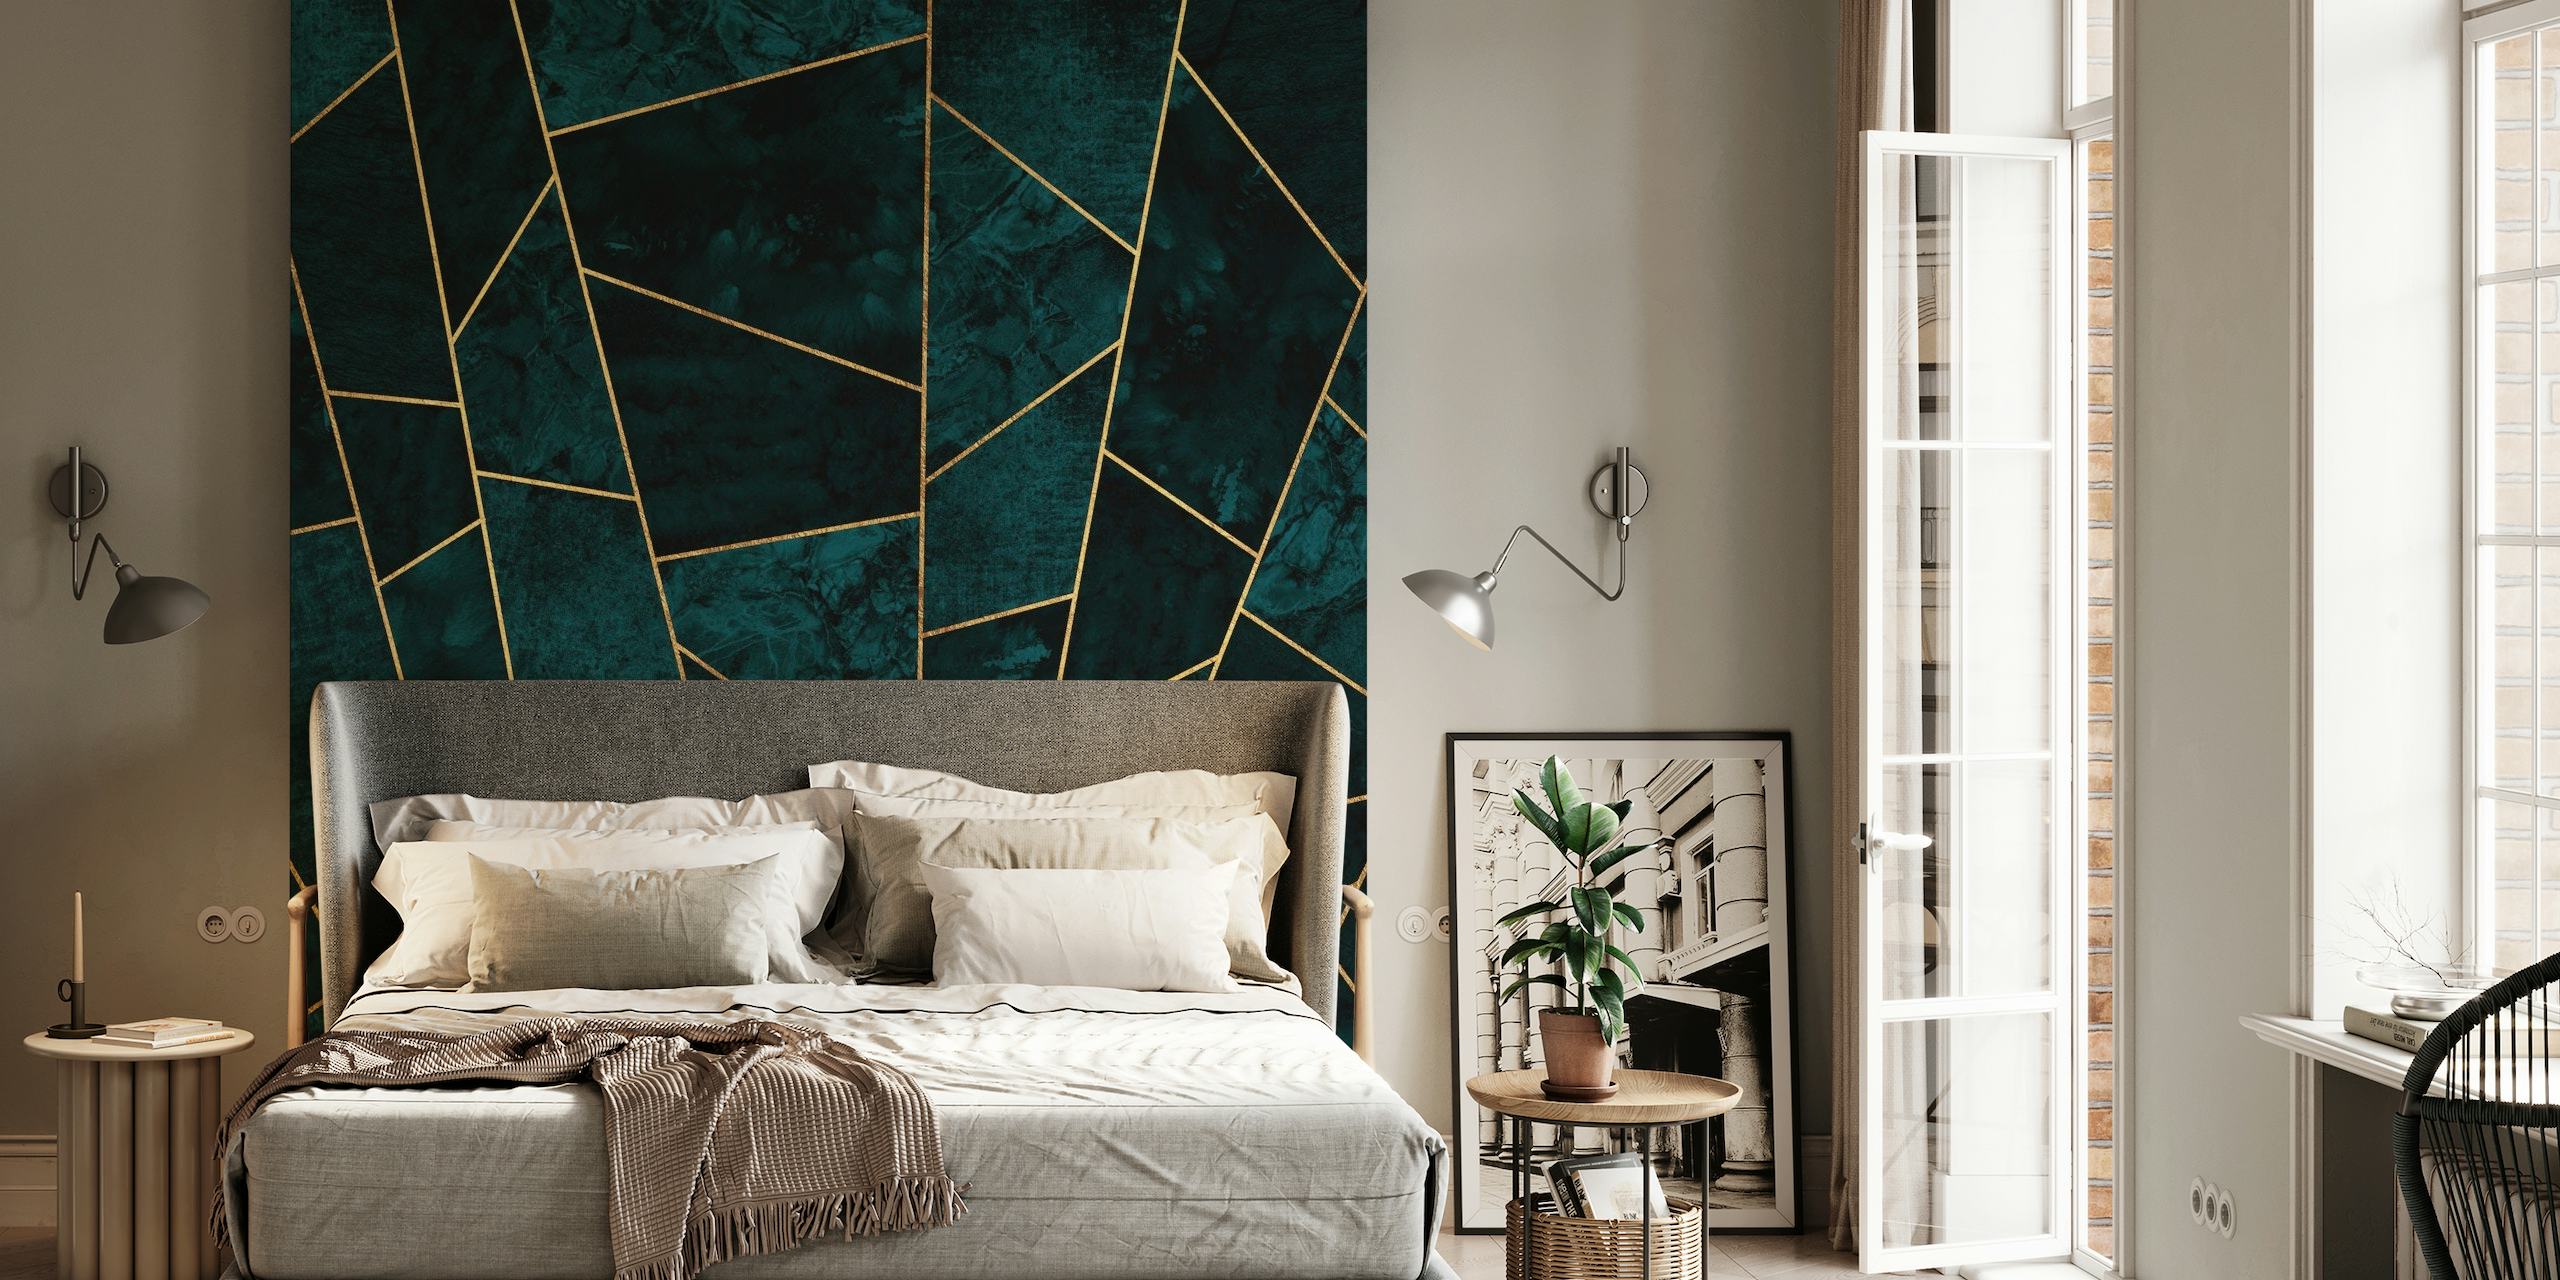 Luxe Teal Abstract fotobehang met gouden geometrische lijnen op een donkere blauwgroen achtergrond